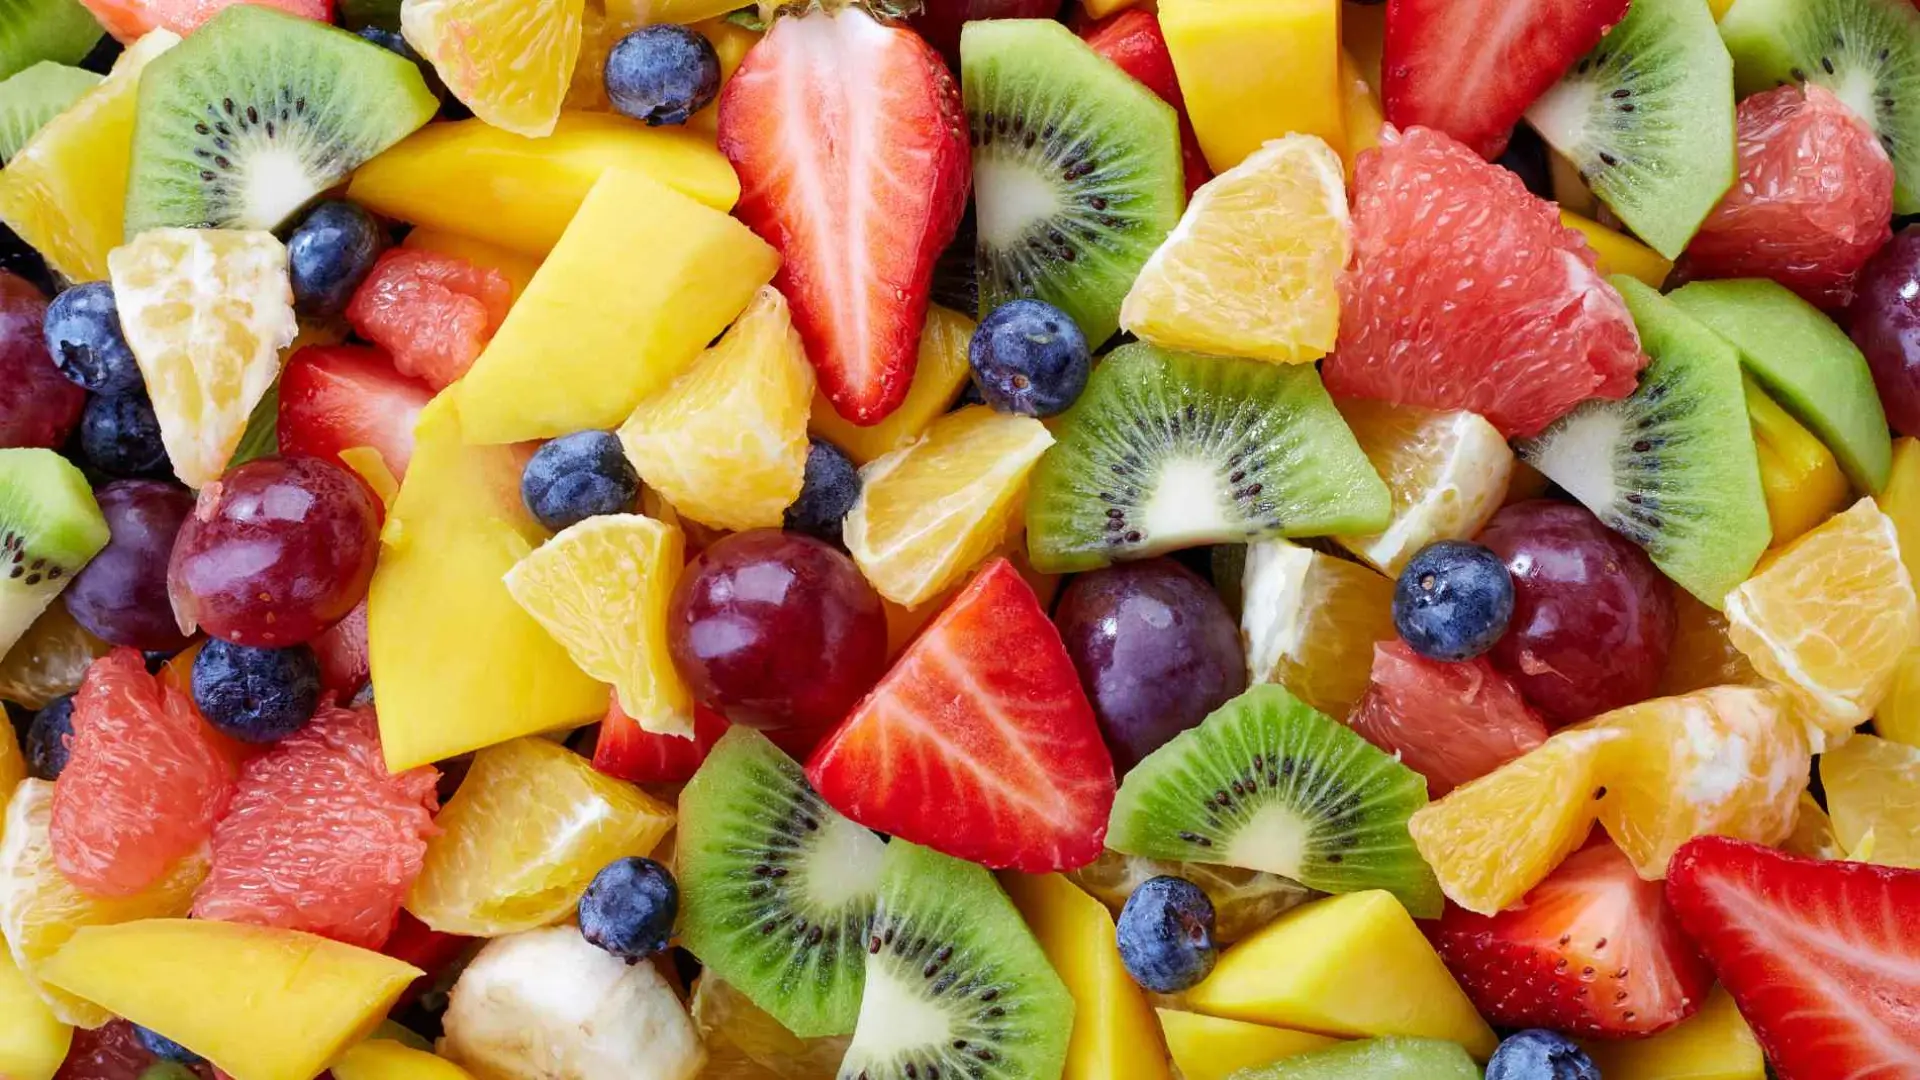 la-fruta-rica-en-antioxidantes-y-vitamina-c-que-ayuda-a-bajar-de-peso-y-reduce-el-estres